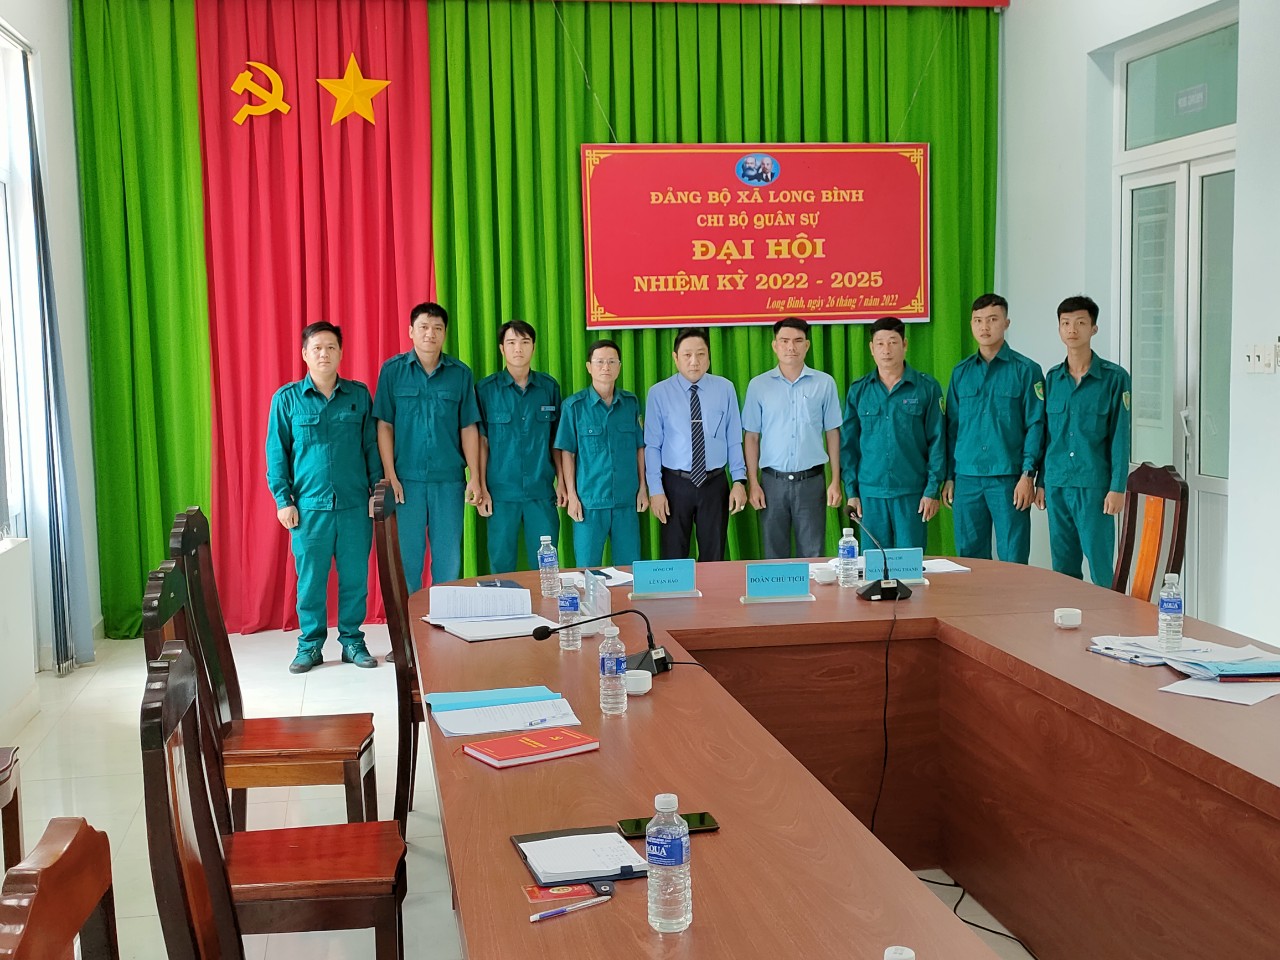 Chi bộ Quân sự xã Long Bình tổ chức Đại hội nhiệm kỳ 2022 – 2025